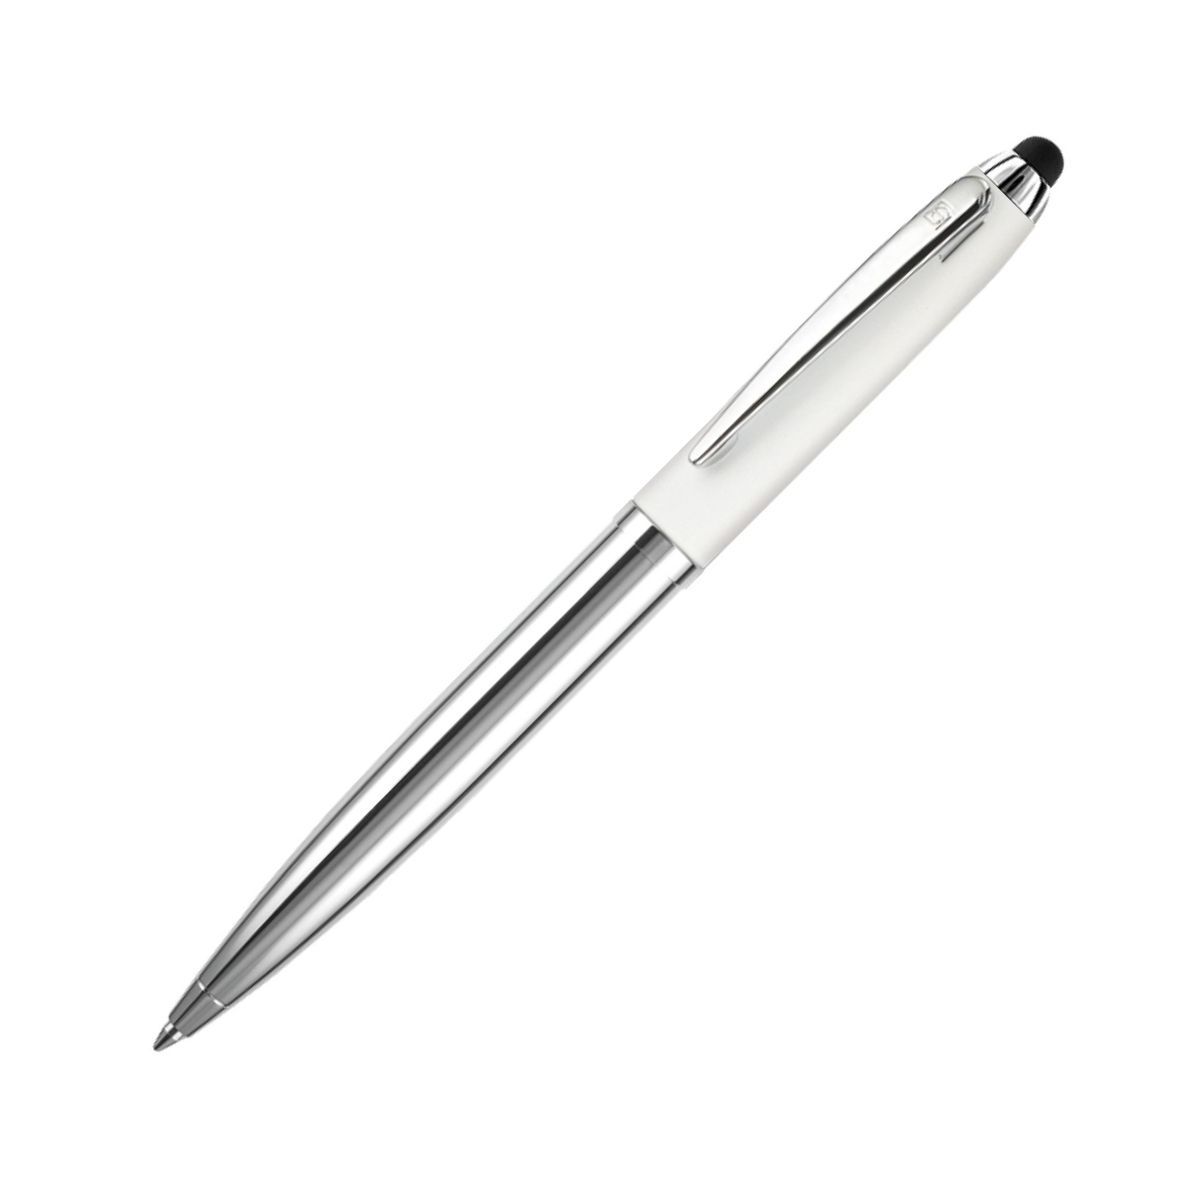 Вые ручки. Ручка шариковая Texas Luxor 8595brn/Ch. Senator, модель Nautic. Ручка Зингер шариковая. Berlingo h20 Neon прозрачная шариковая ручка.